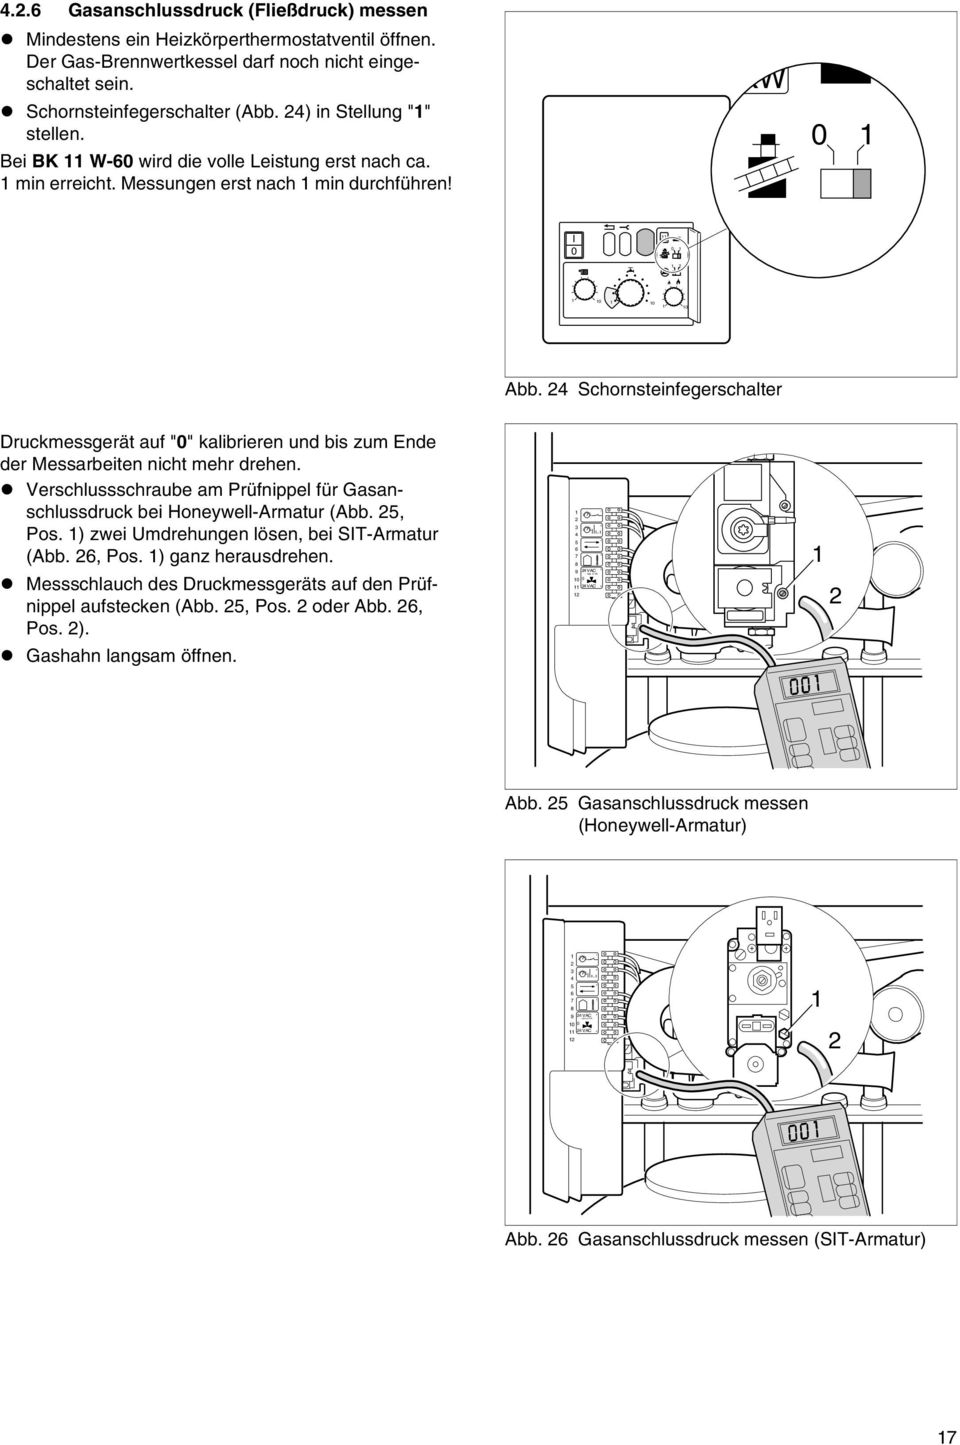 4 Schornsteinfegerschalter Druckmessgerät auf "0" kalibrieren und bis zum Ende der Messarbeiten nicht mehr drehen. Verschlussschraube am Prüfnippel für Gasanschlussdruck bei Honeywell-Armatur (Abb.